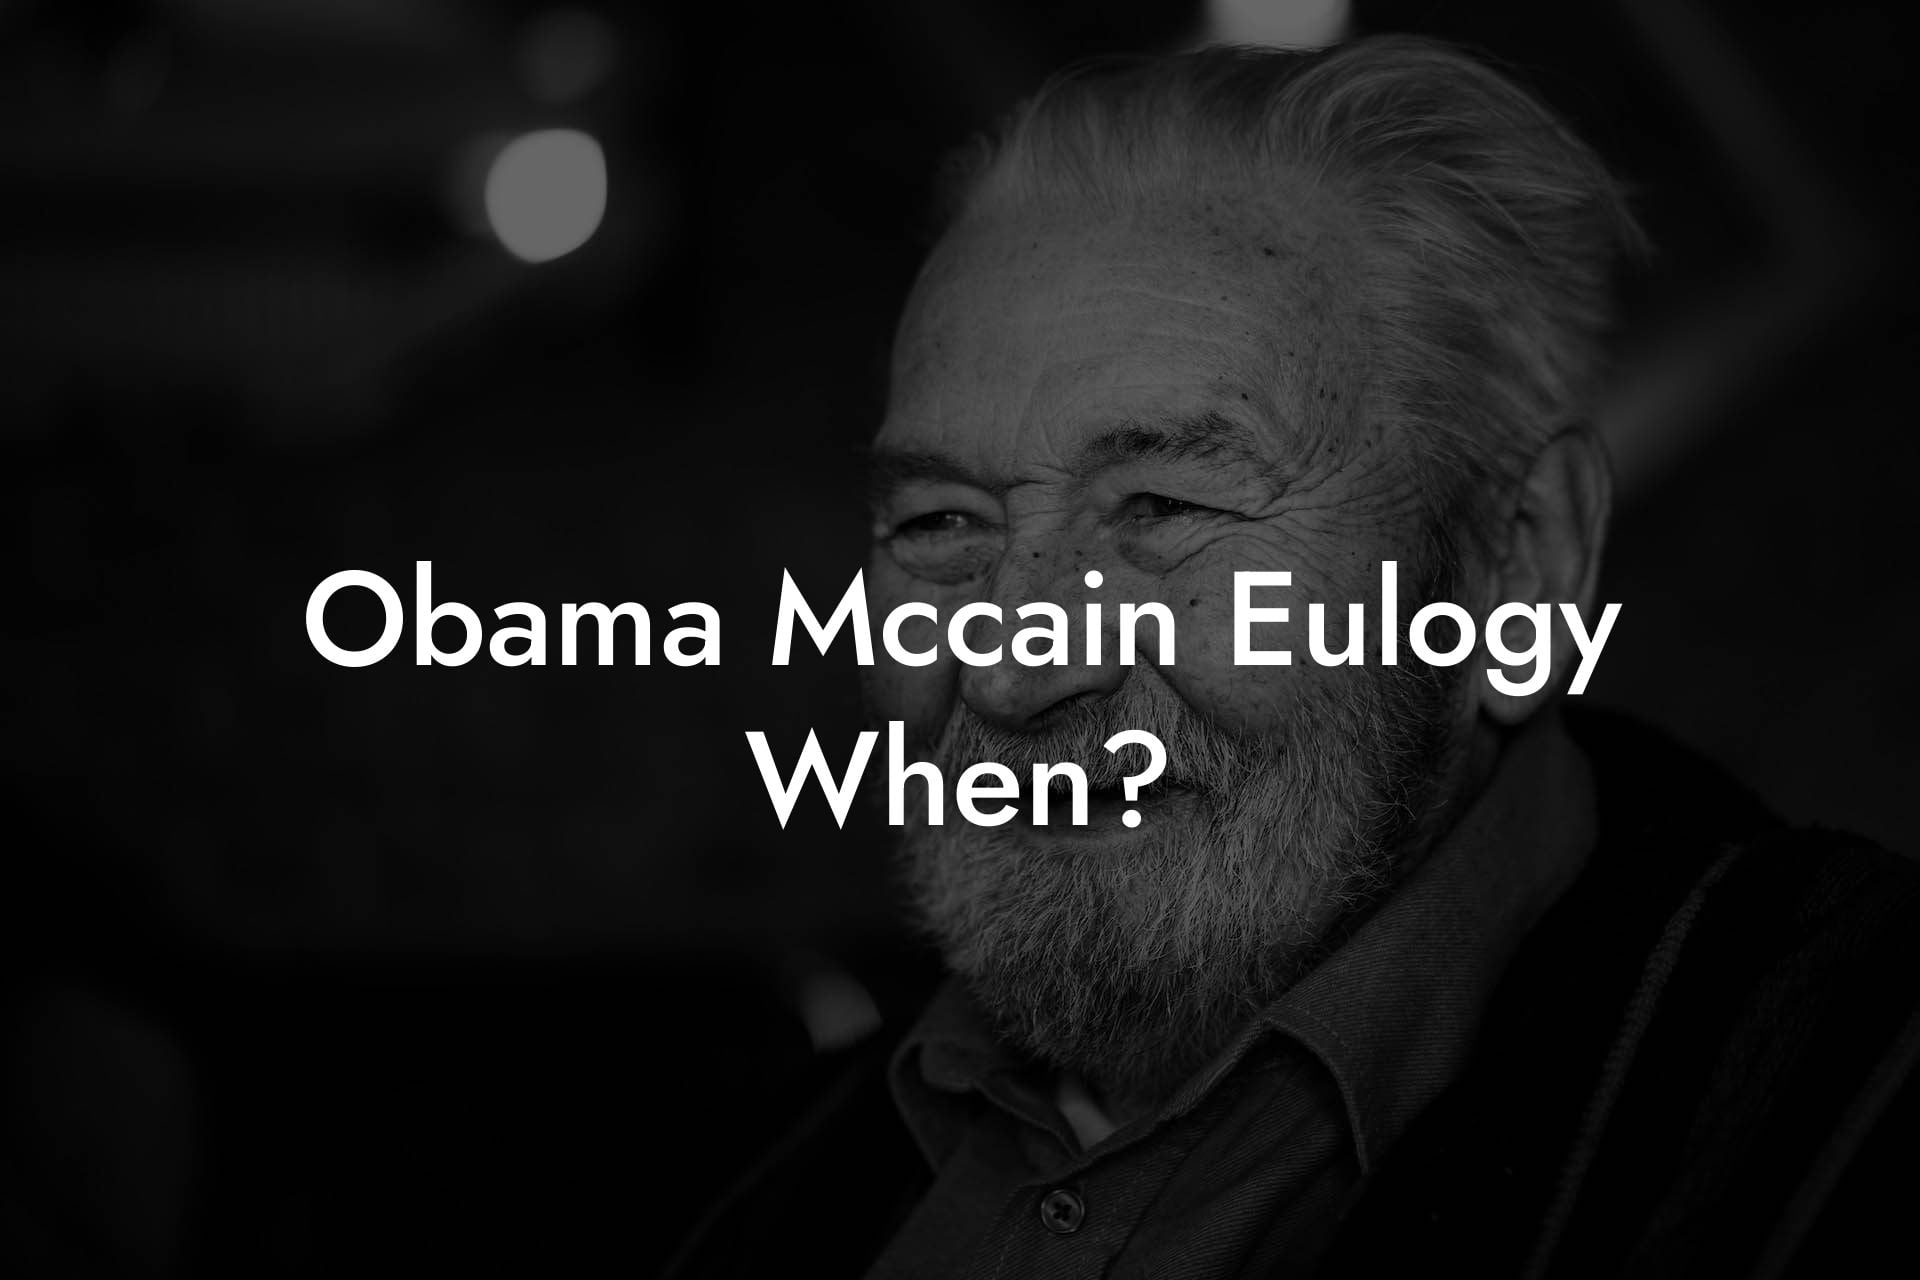 Obama Mccain Eulogy When?